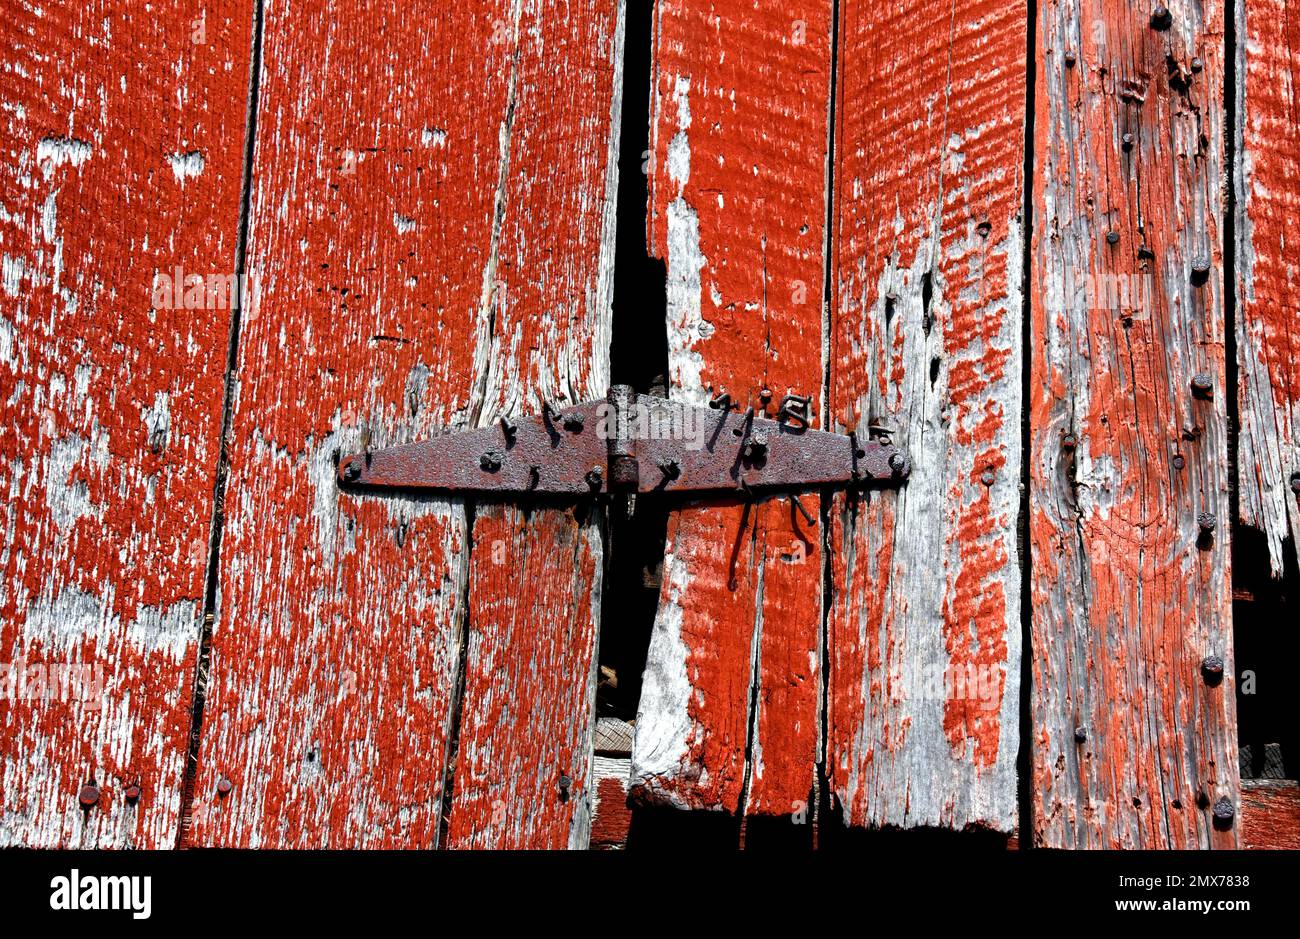 La bisagra oxidada en la puerta del granero viejo se mantiene en su lugar por una miríada de clavos. El granero es rojo con pelado y pintura desgastada. Foto de stock